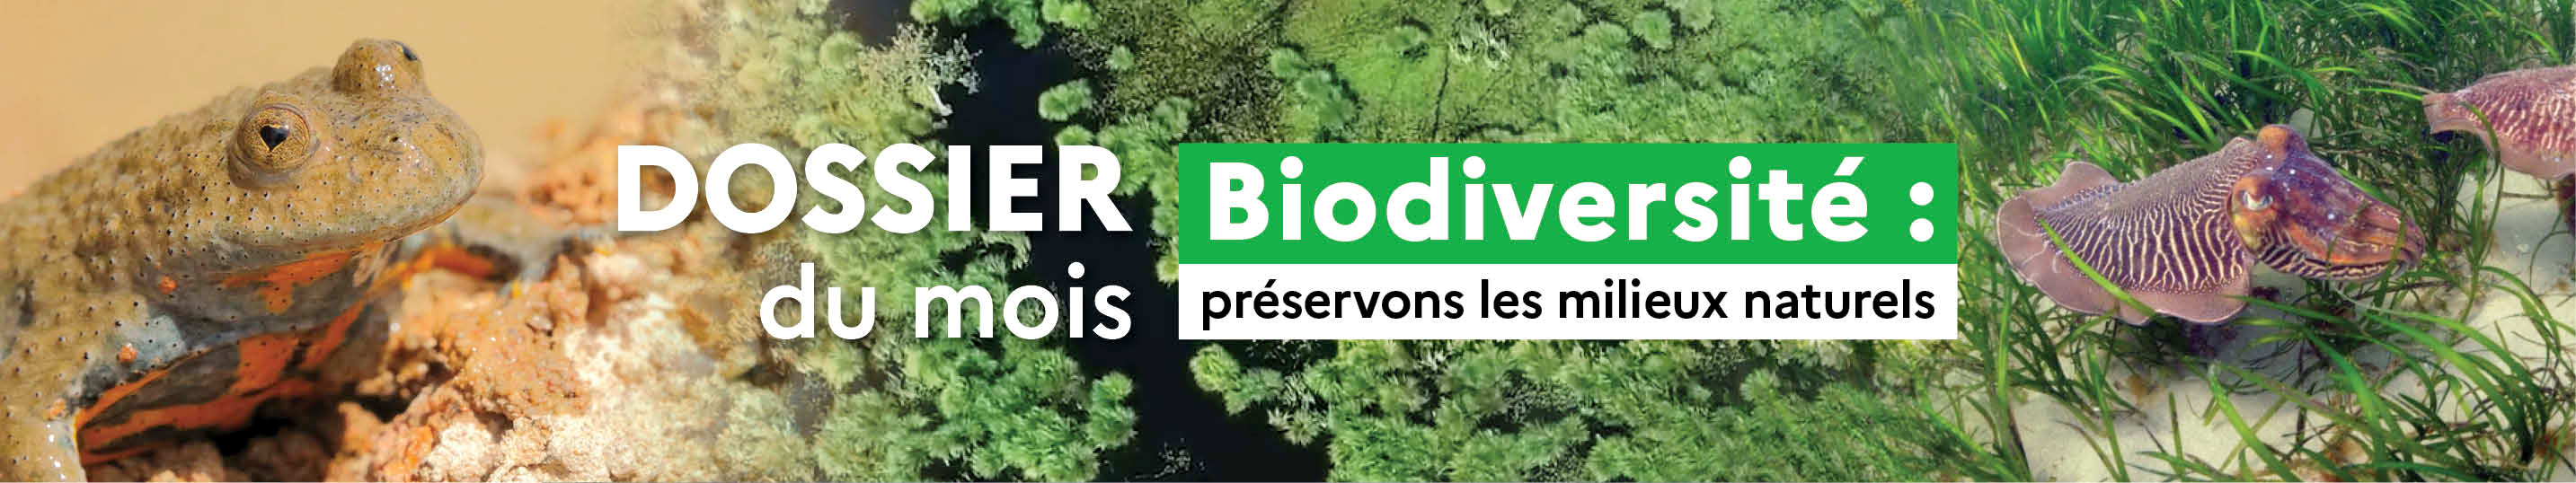 Dossier du mois : Biodiversité, préservons les milieux naturels